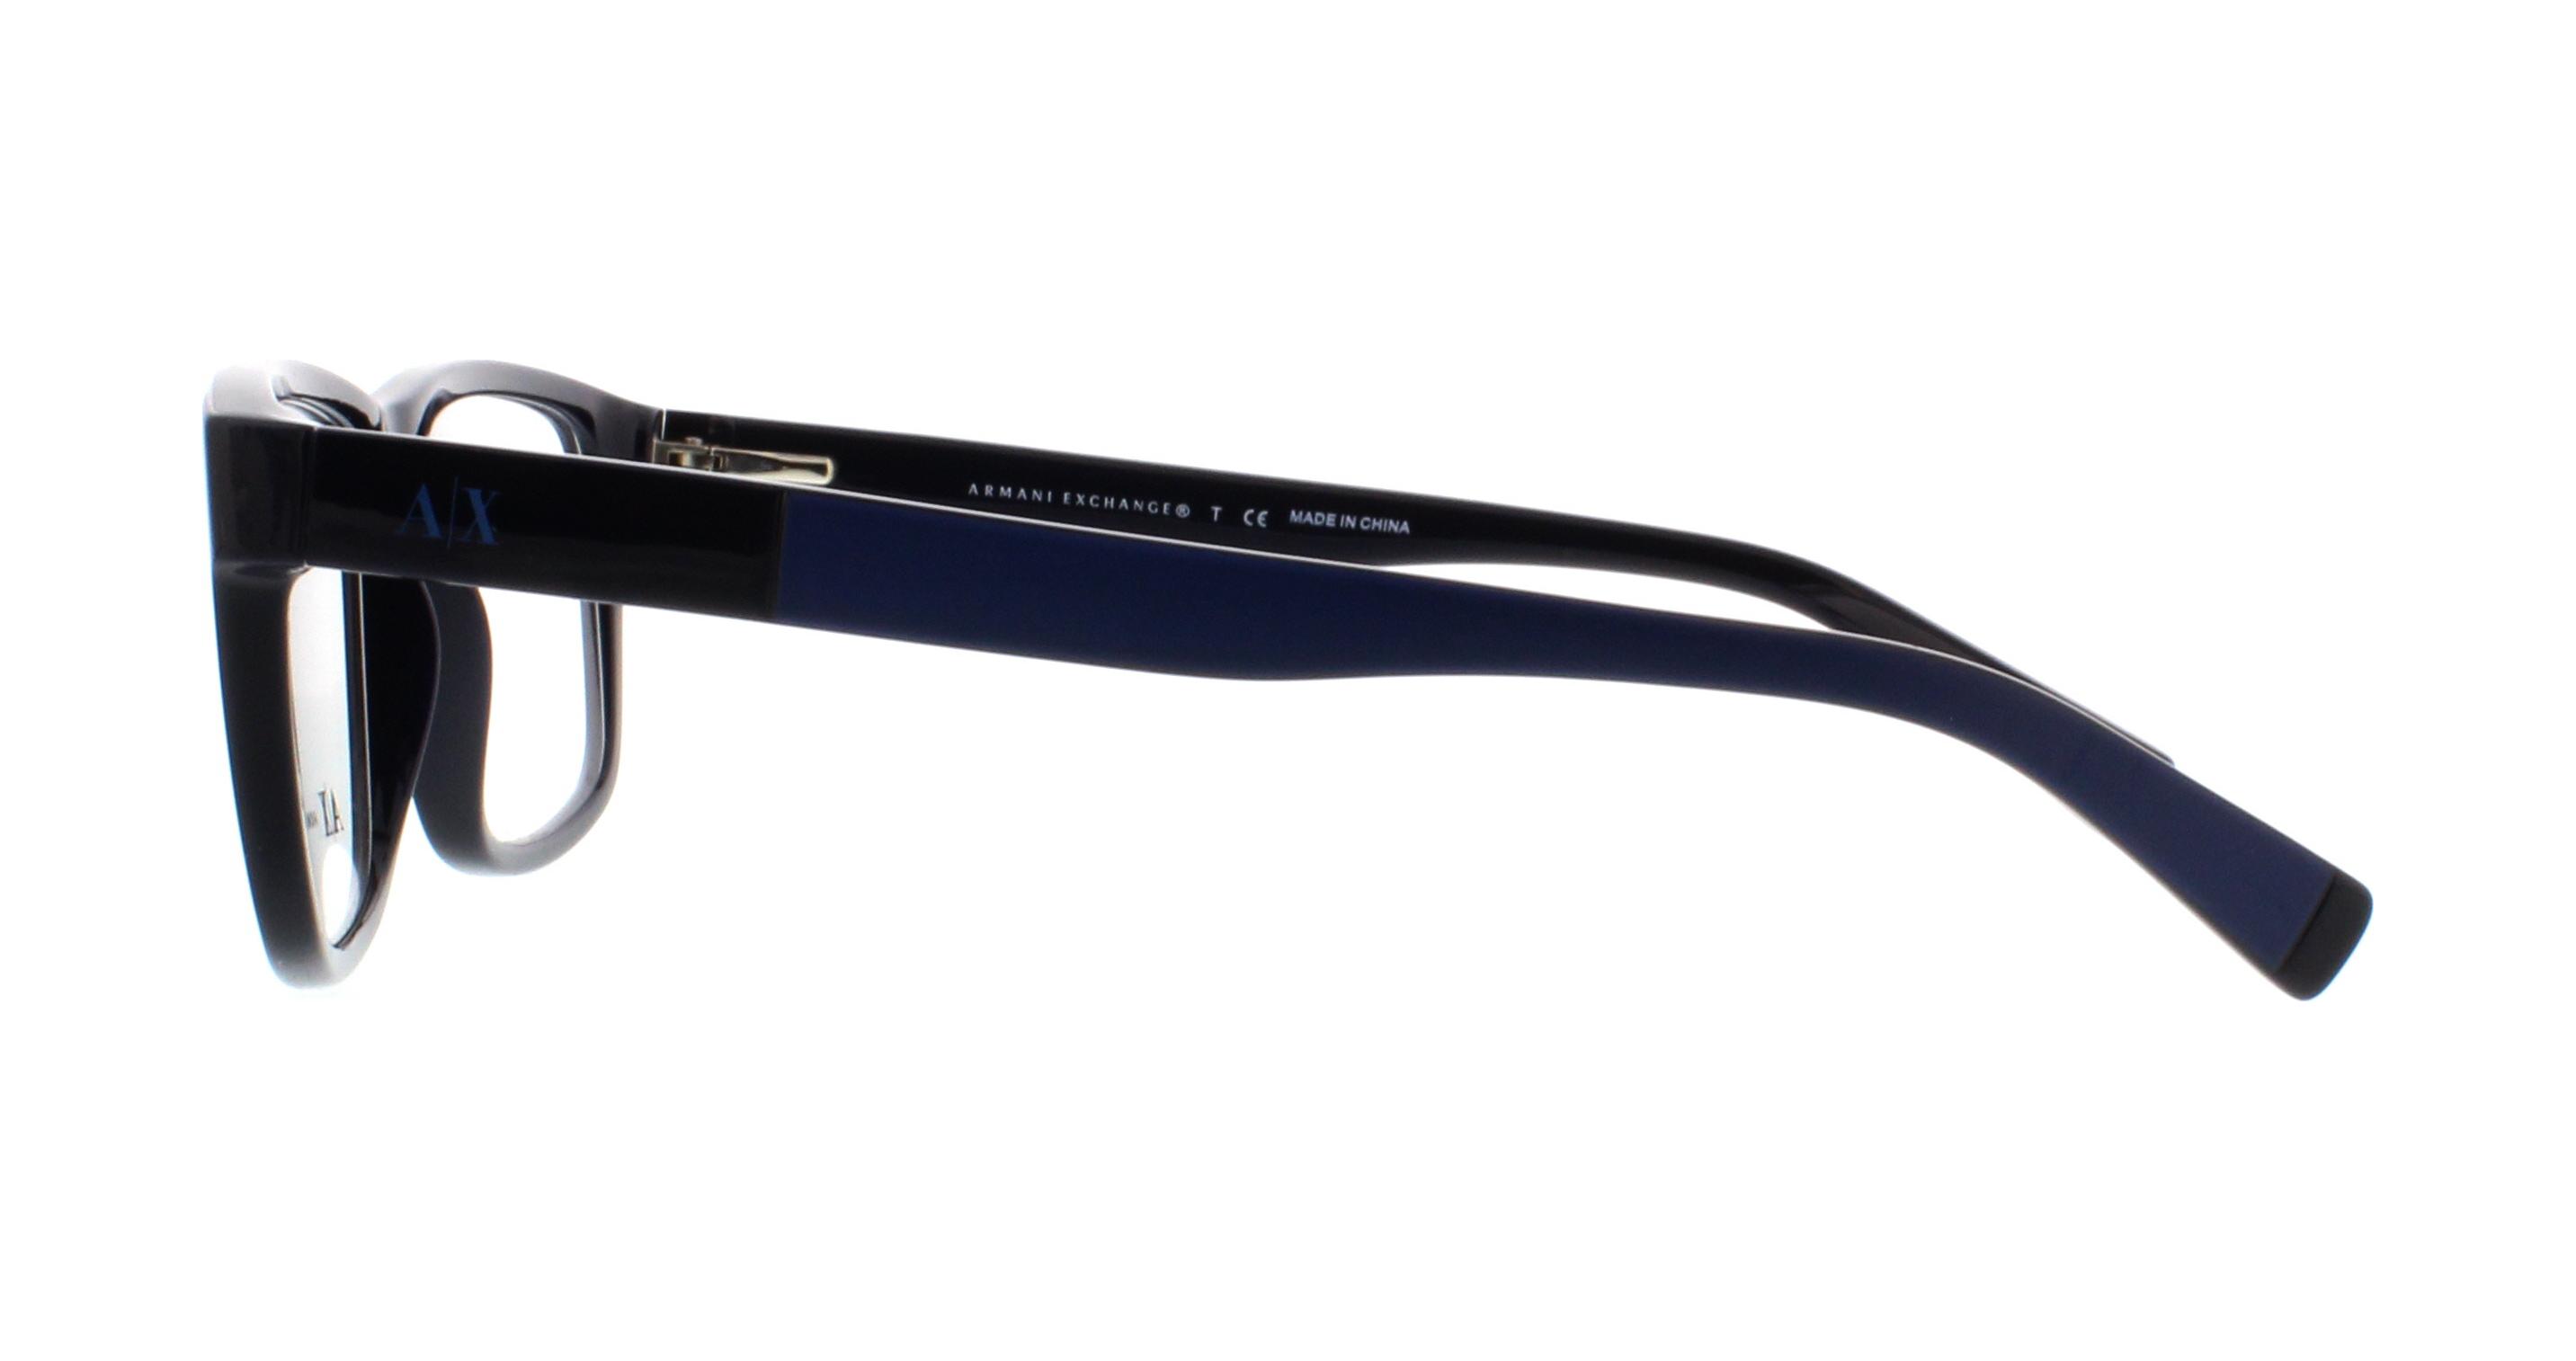 Designer Frames Outlet. Armani Exchange Eyeglasses AX3025